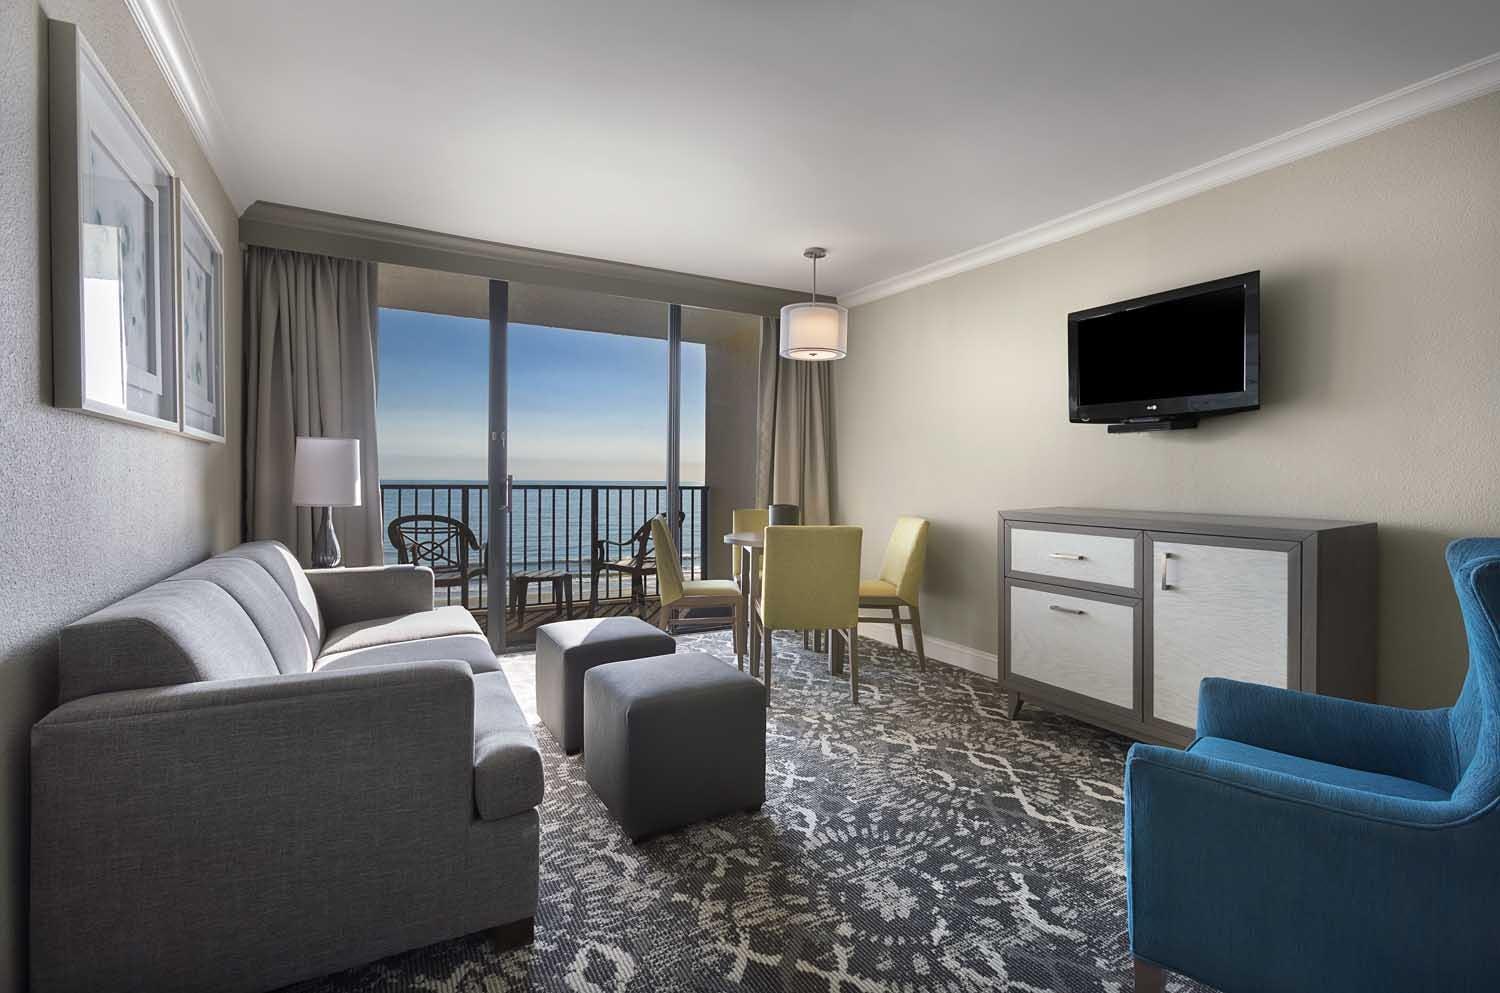 Breakers Resort - 1 Bedroom Oceanfront Palms Suite